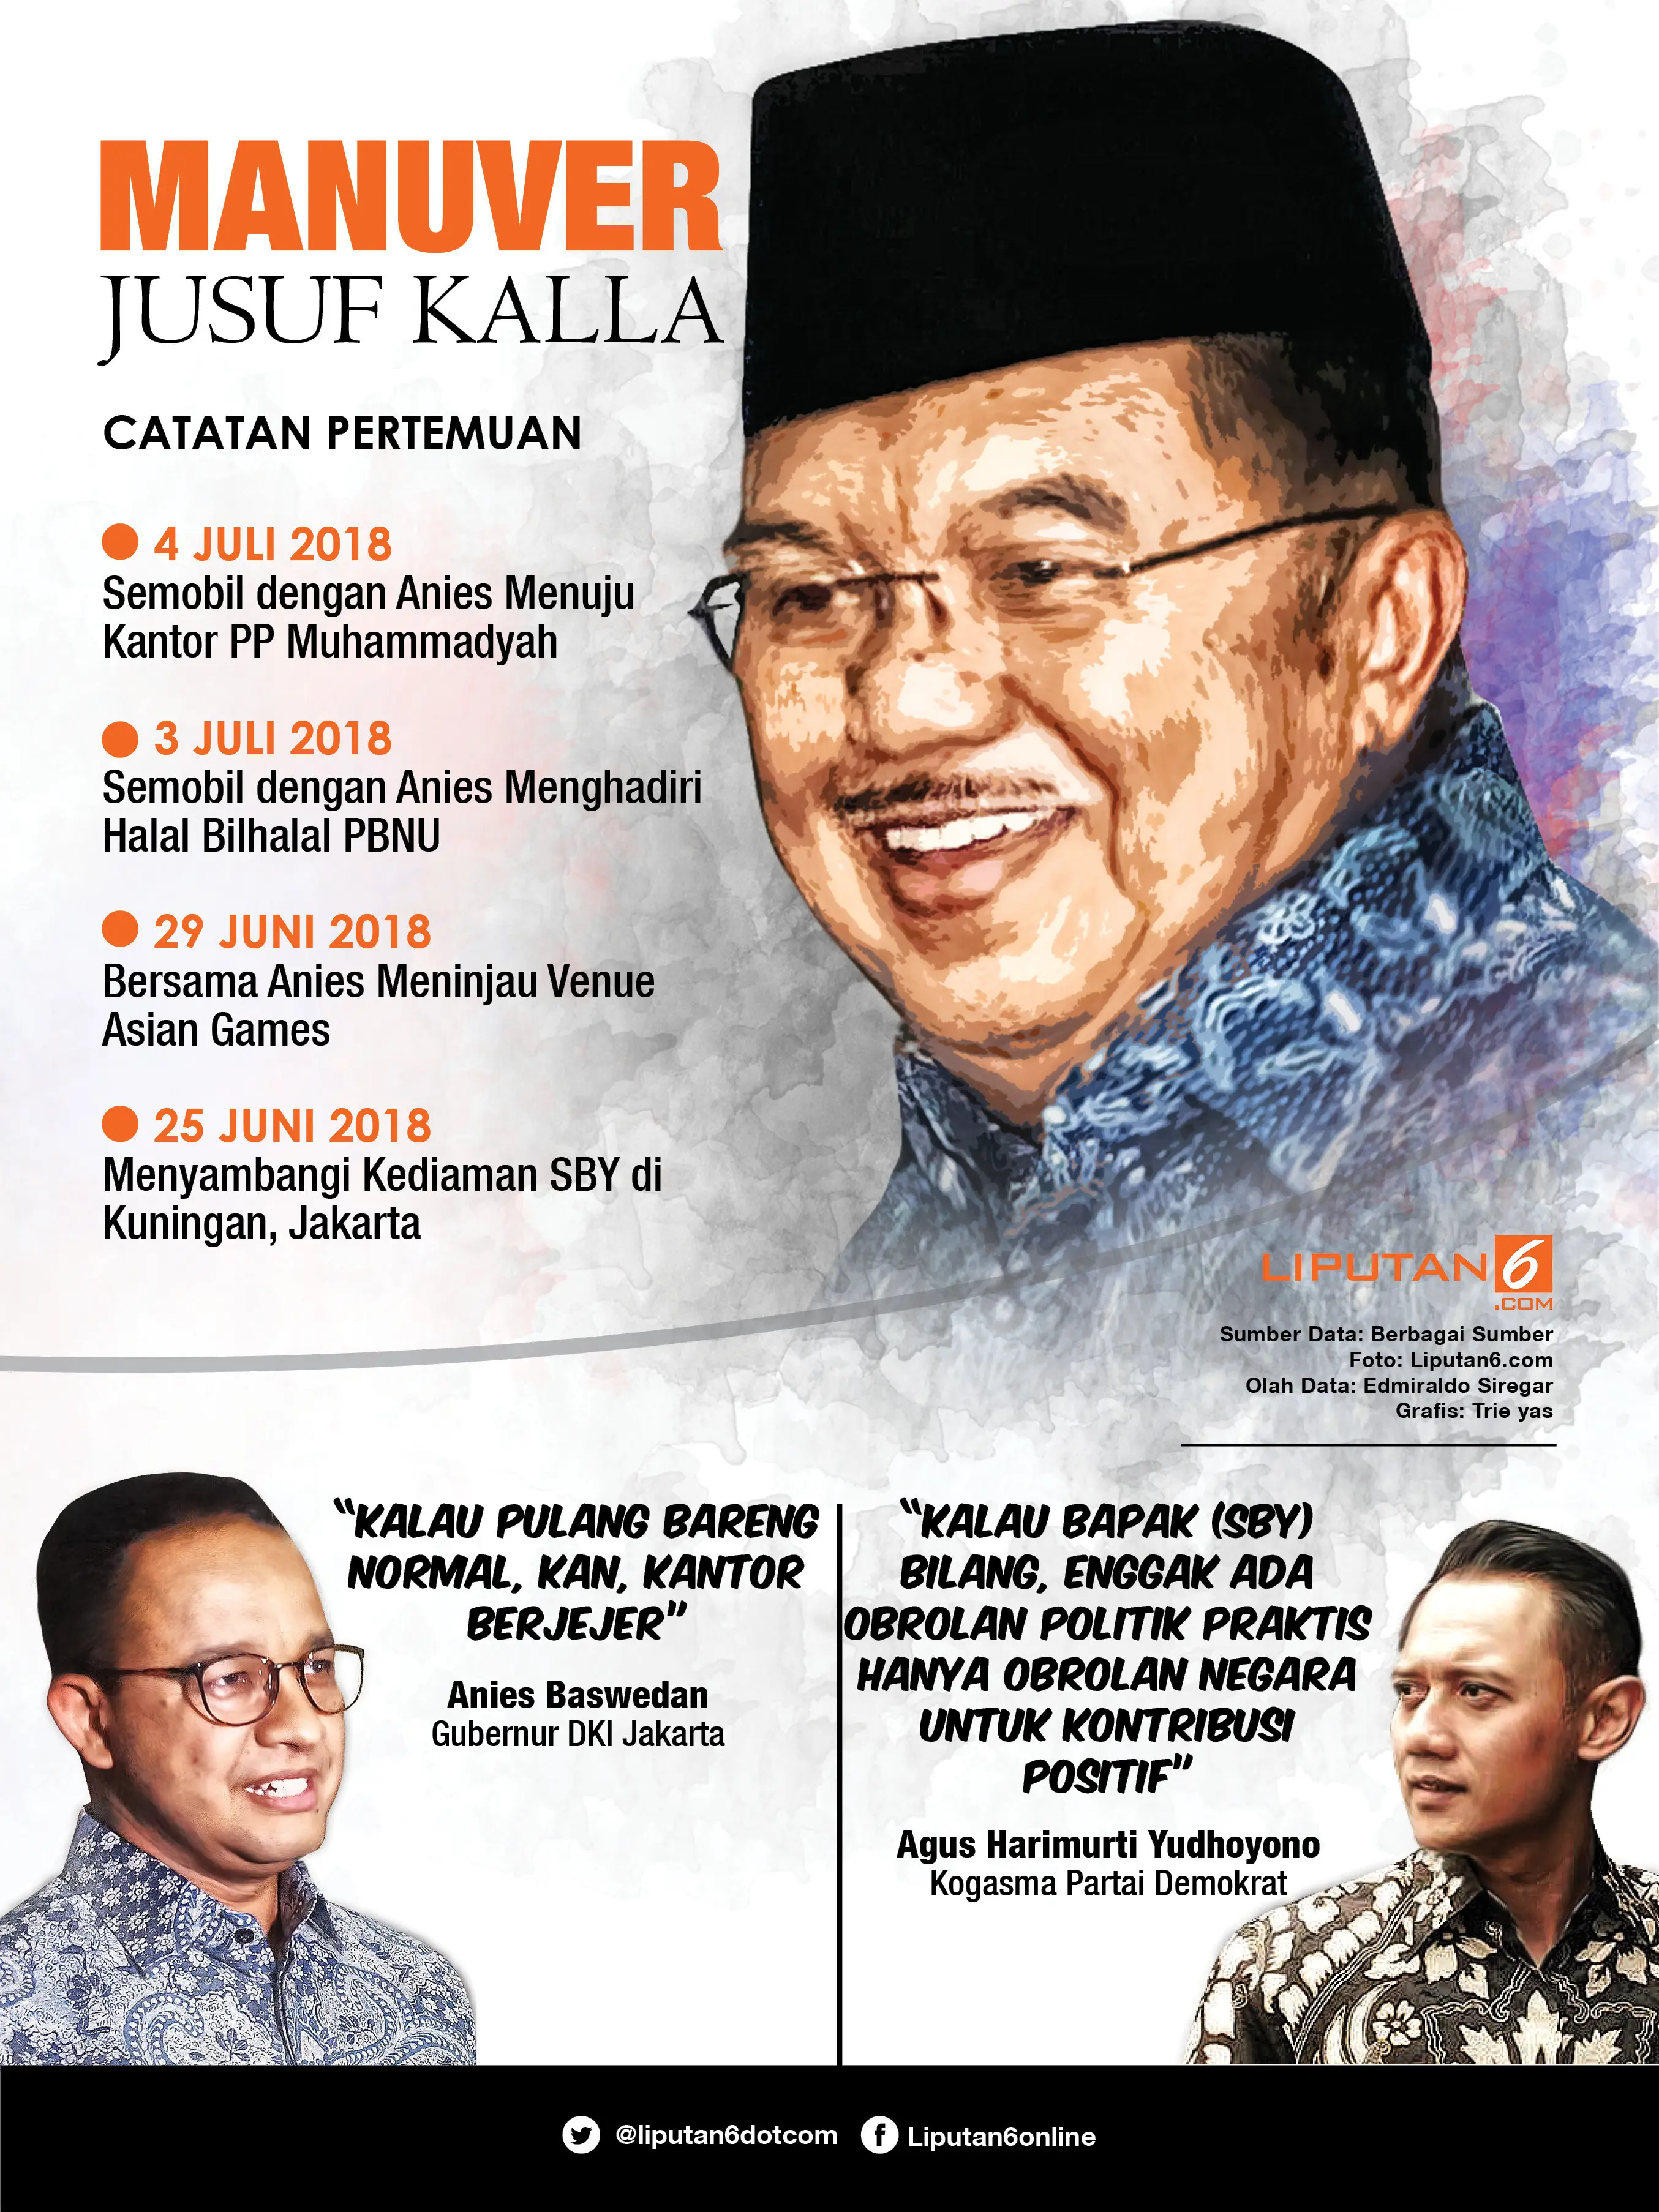 Infografis Manuver Jusuf Kalla